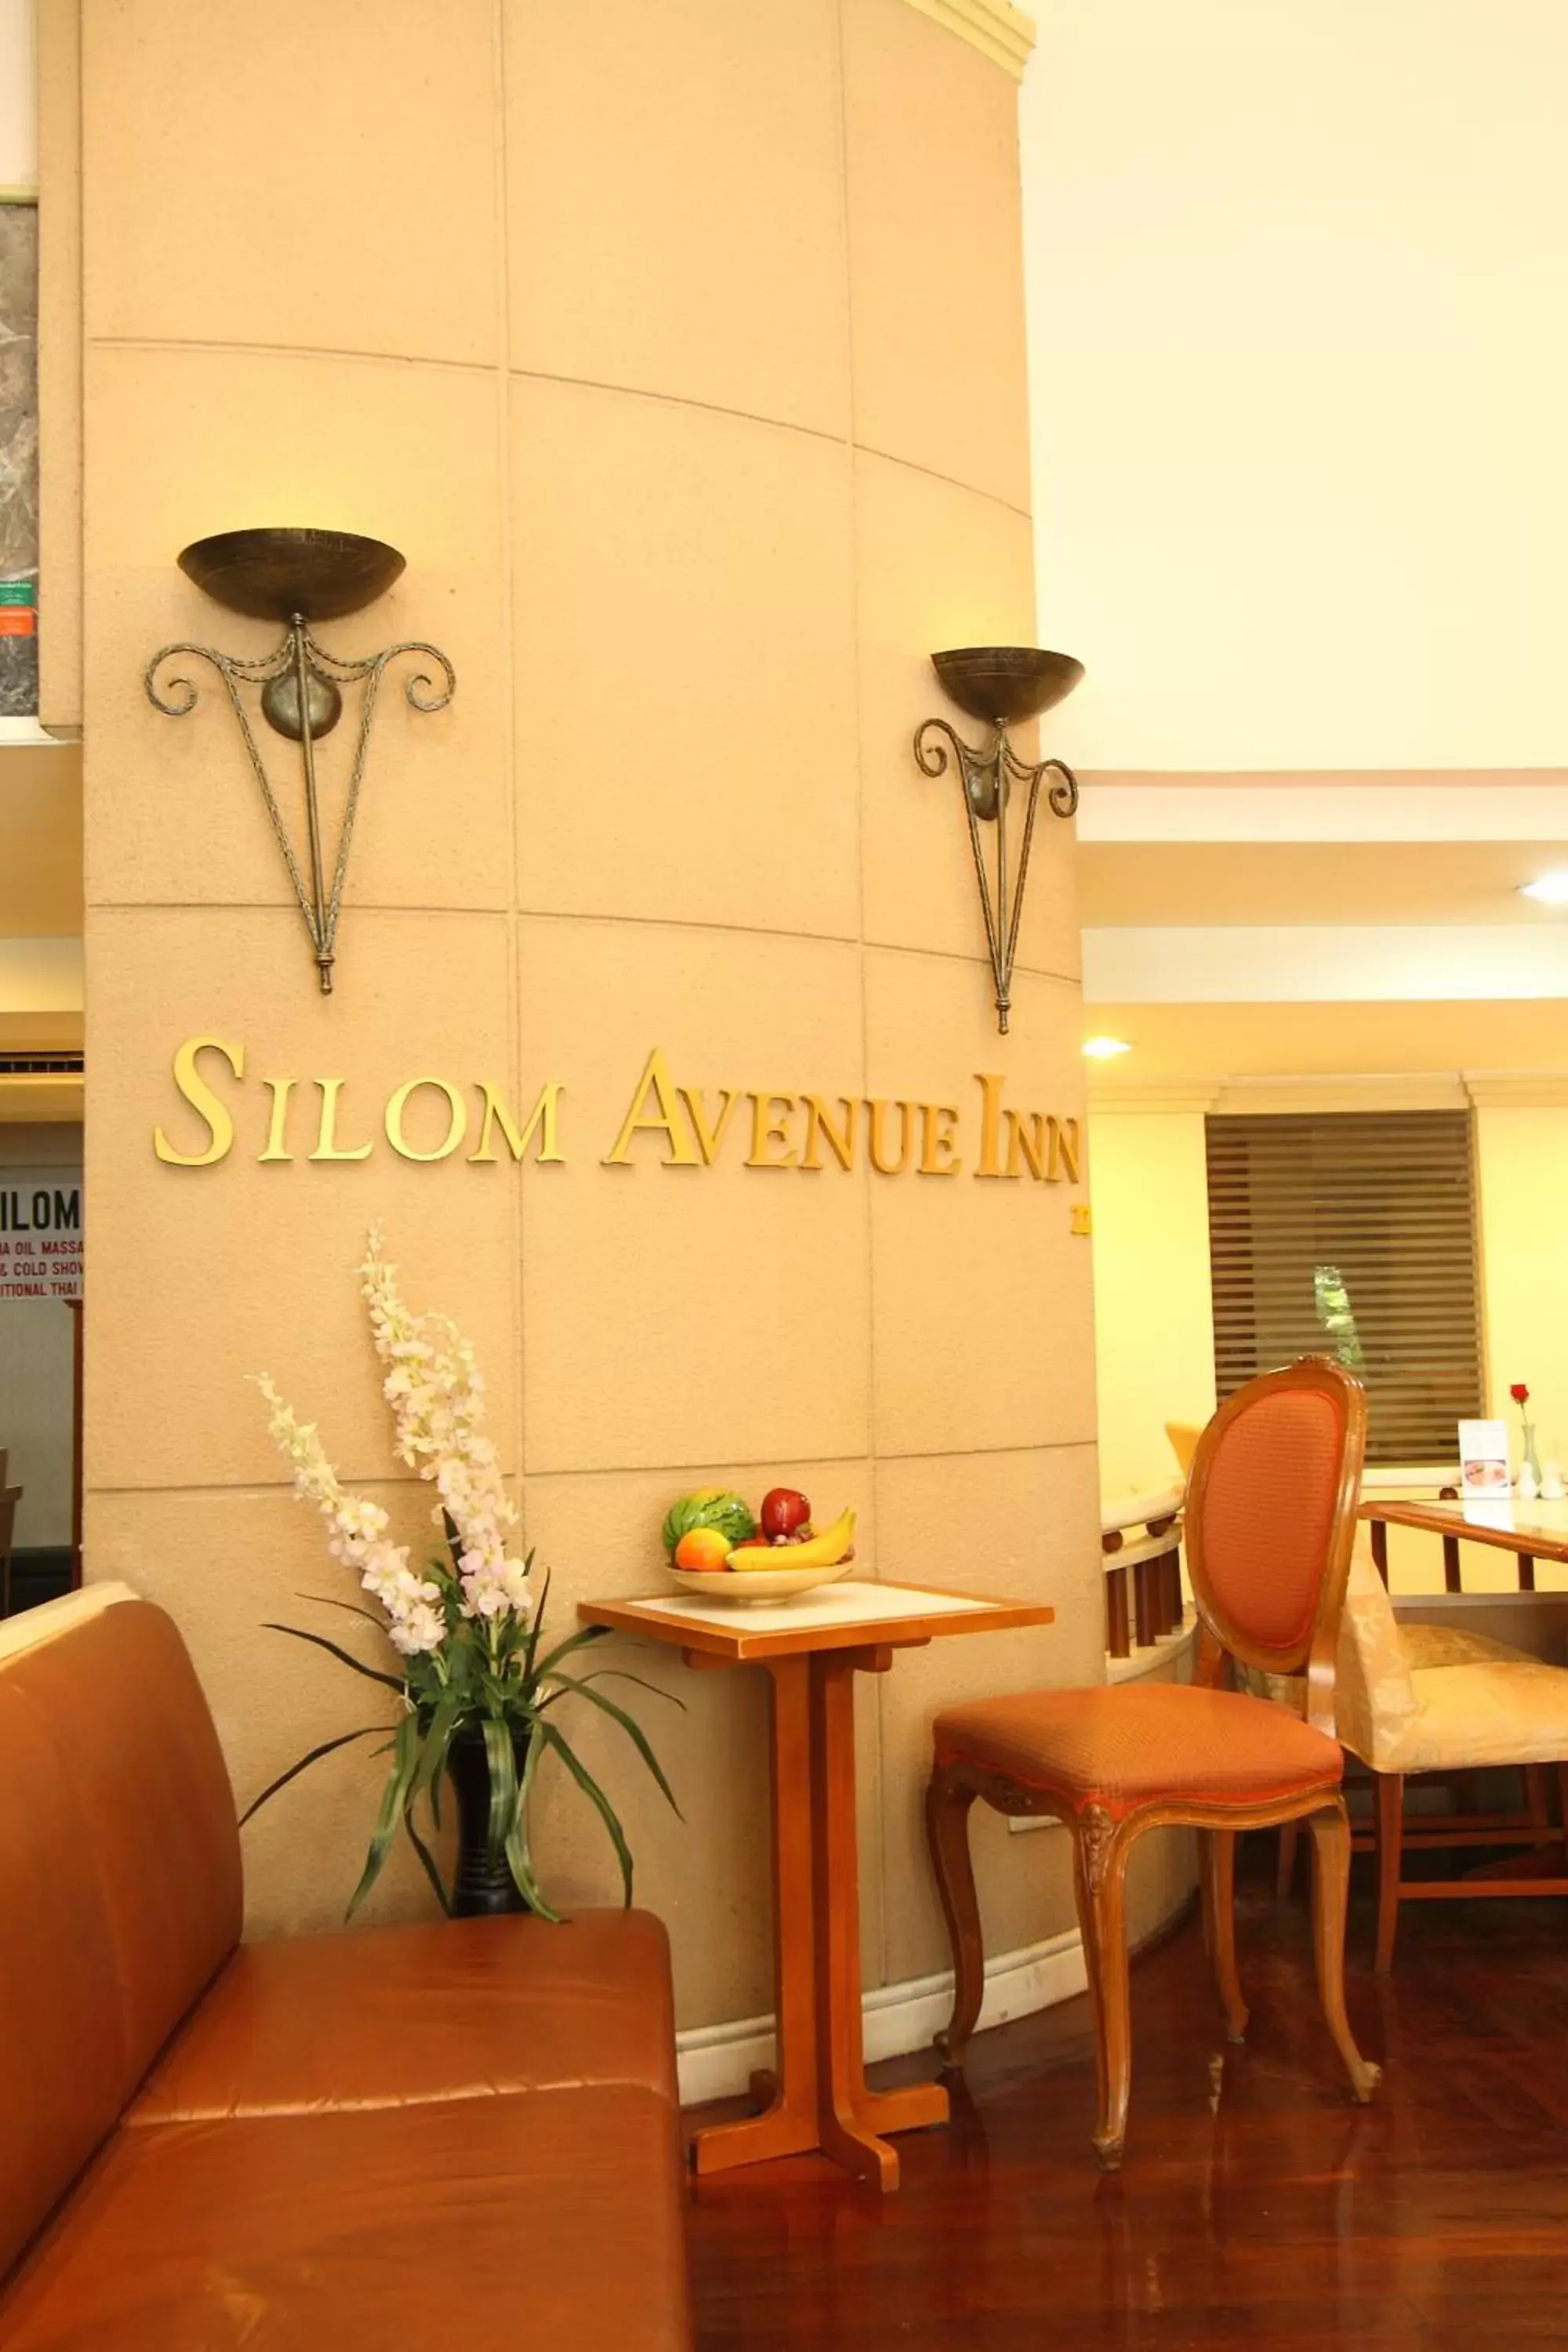 Lobby or reception in Silom Avenue Inn